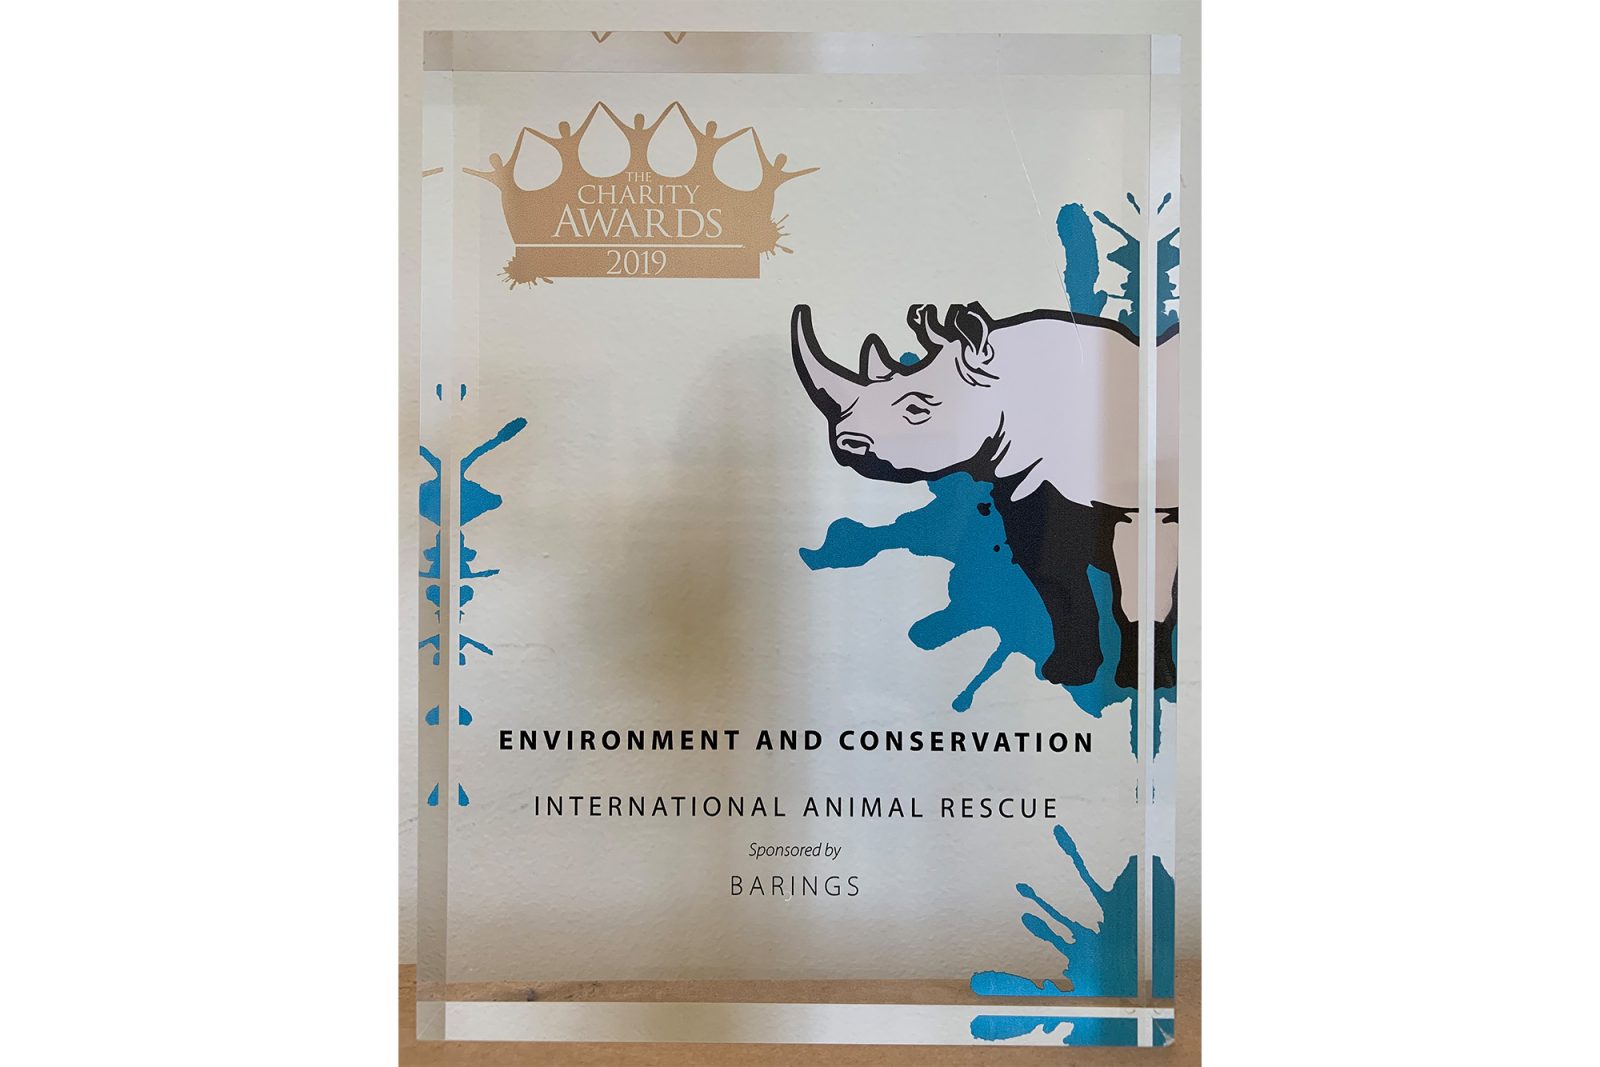 Proyek Restorasi Hutan dari International Animal Rescue Meraih Penghargaan Utama di Charity Awards 2019